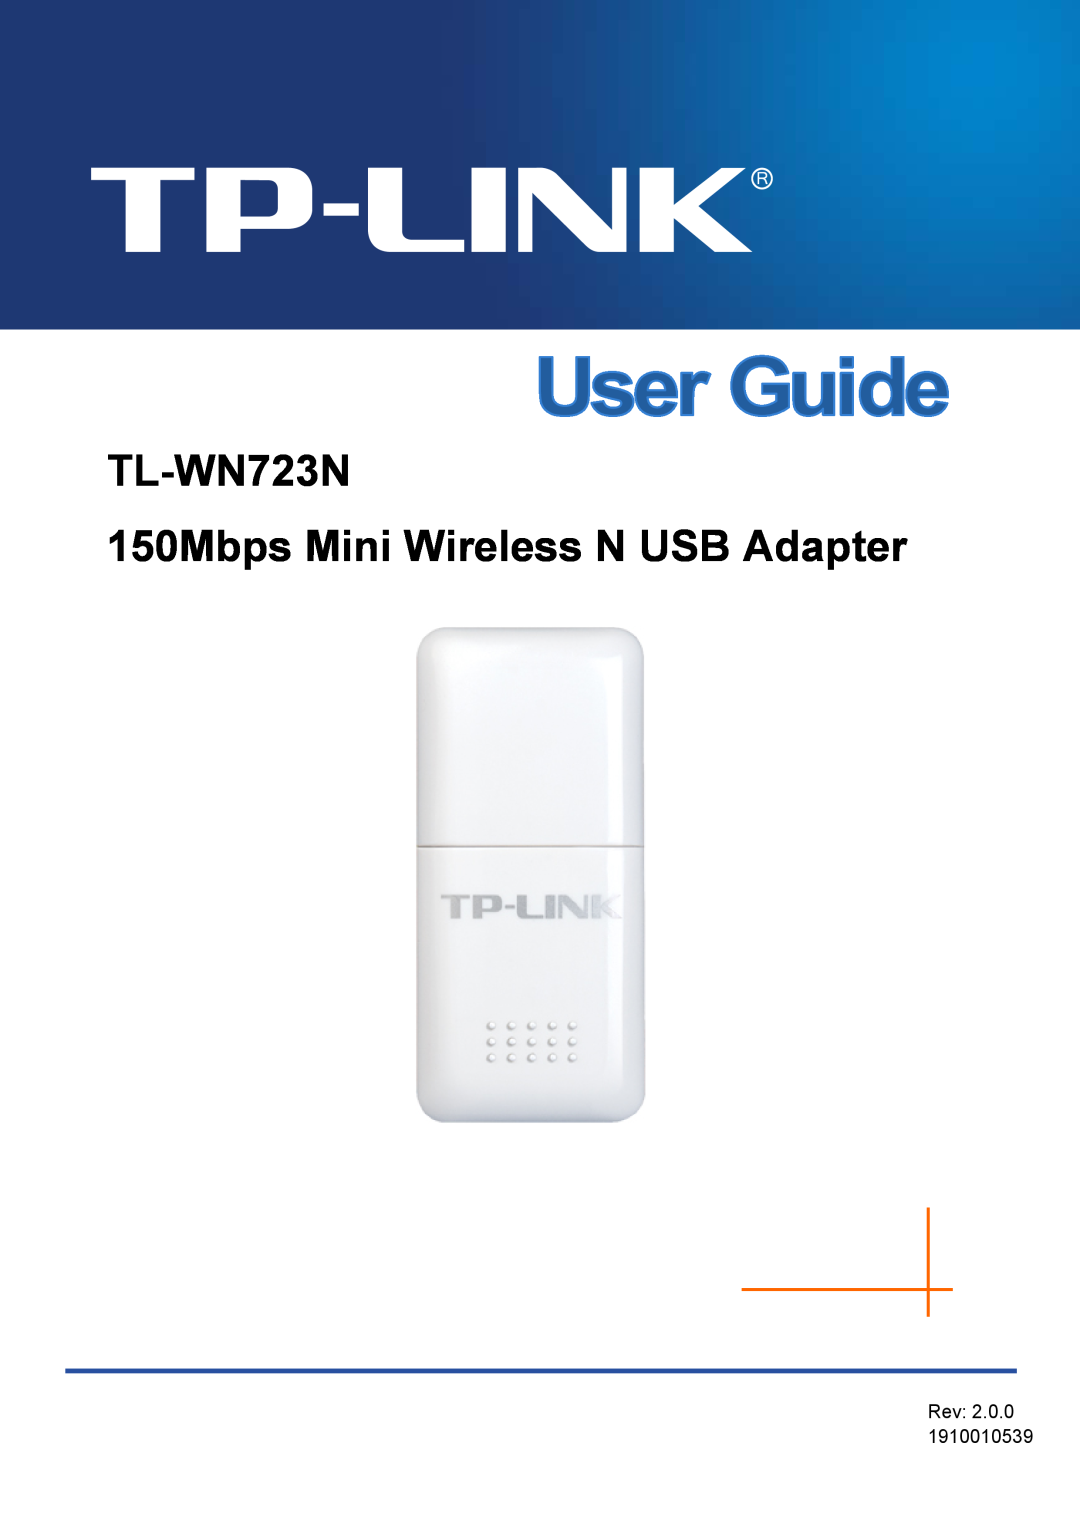 TP-Link manual TL-WN723N 150Mbps Mini Wireless N USB Adapter, Rev 2.0.0 